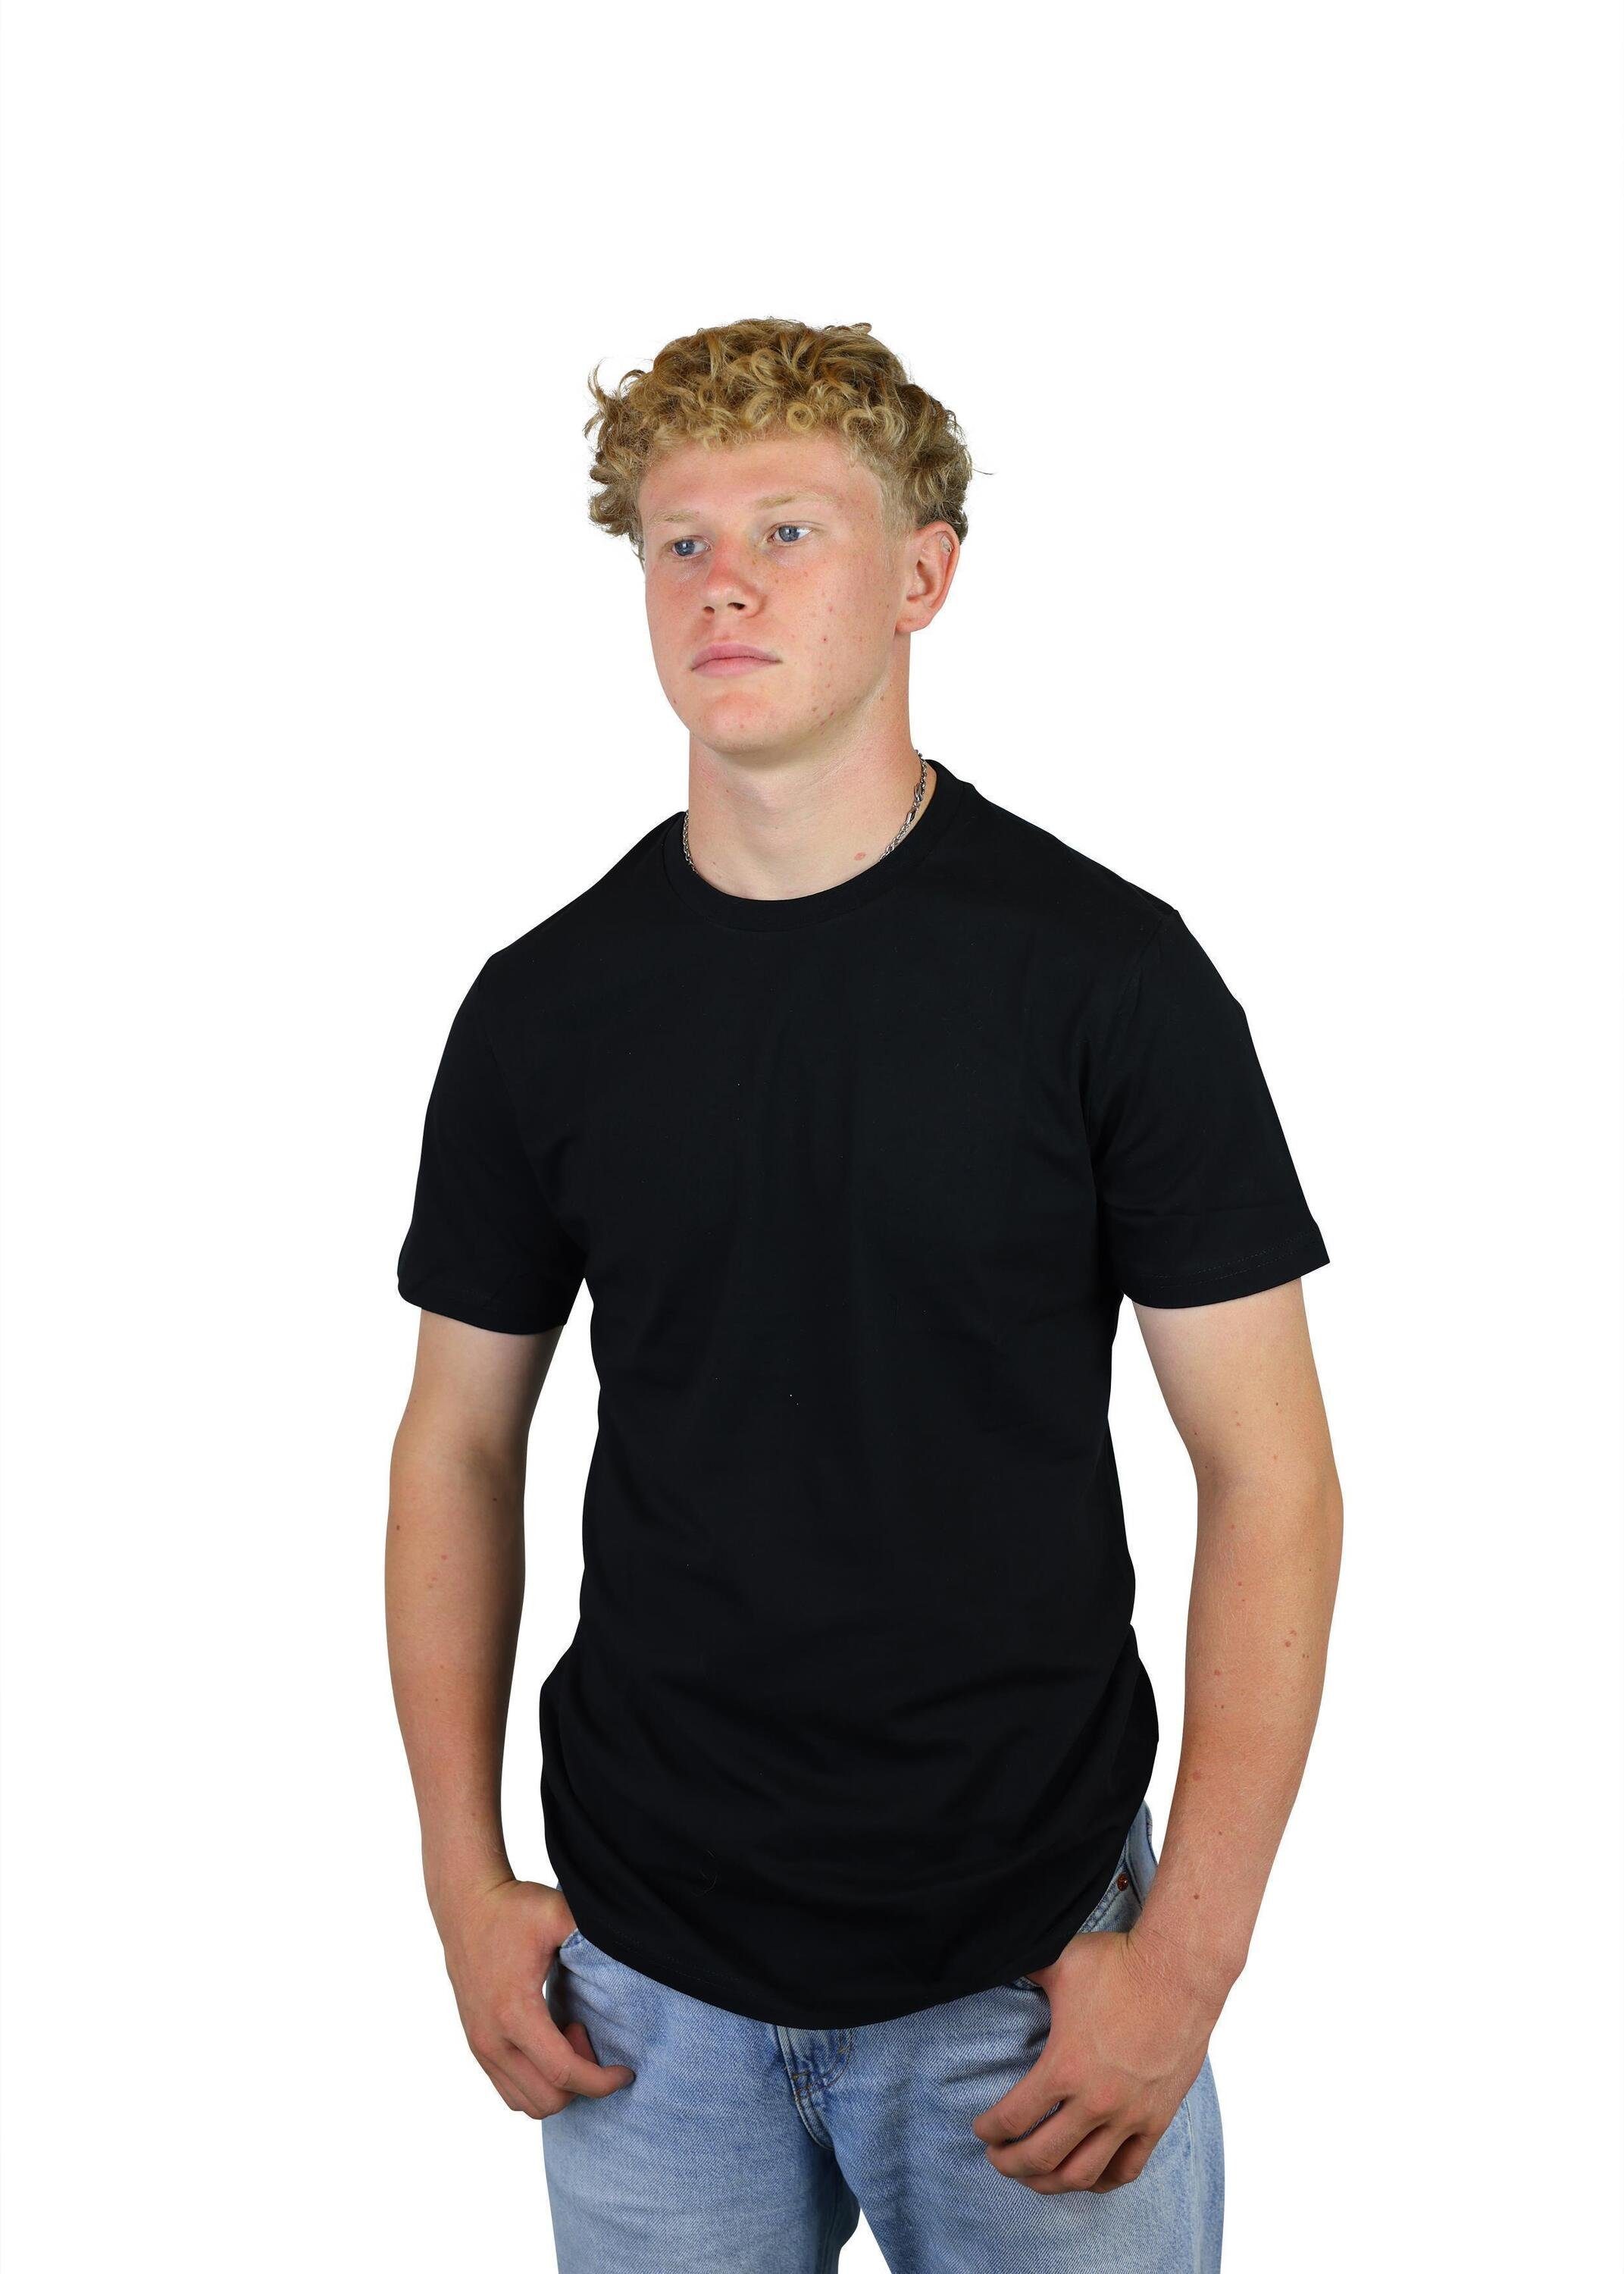 Karl Black T-Shirt aus Fußball, Jugend für Kinder, Baumwolle, FuPer